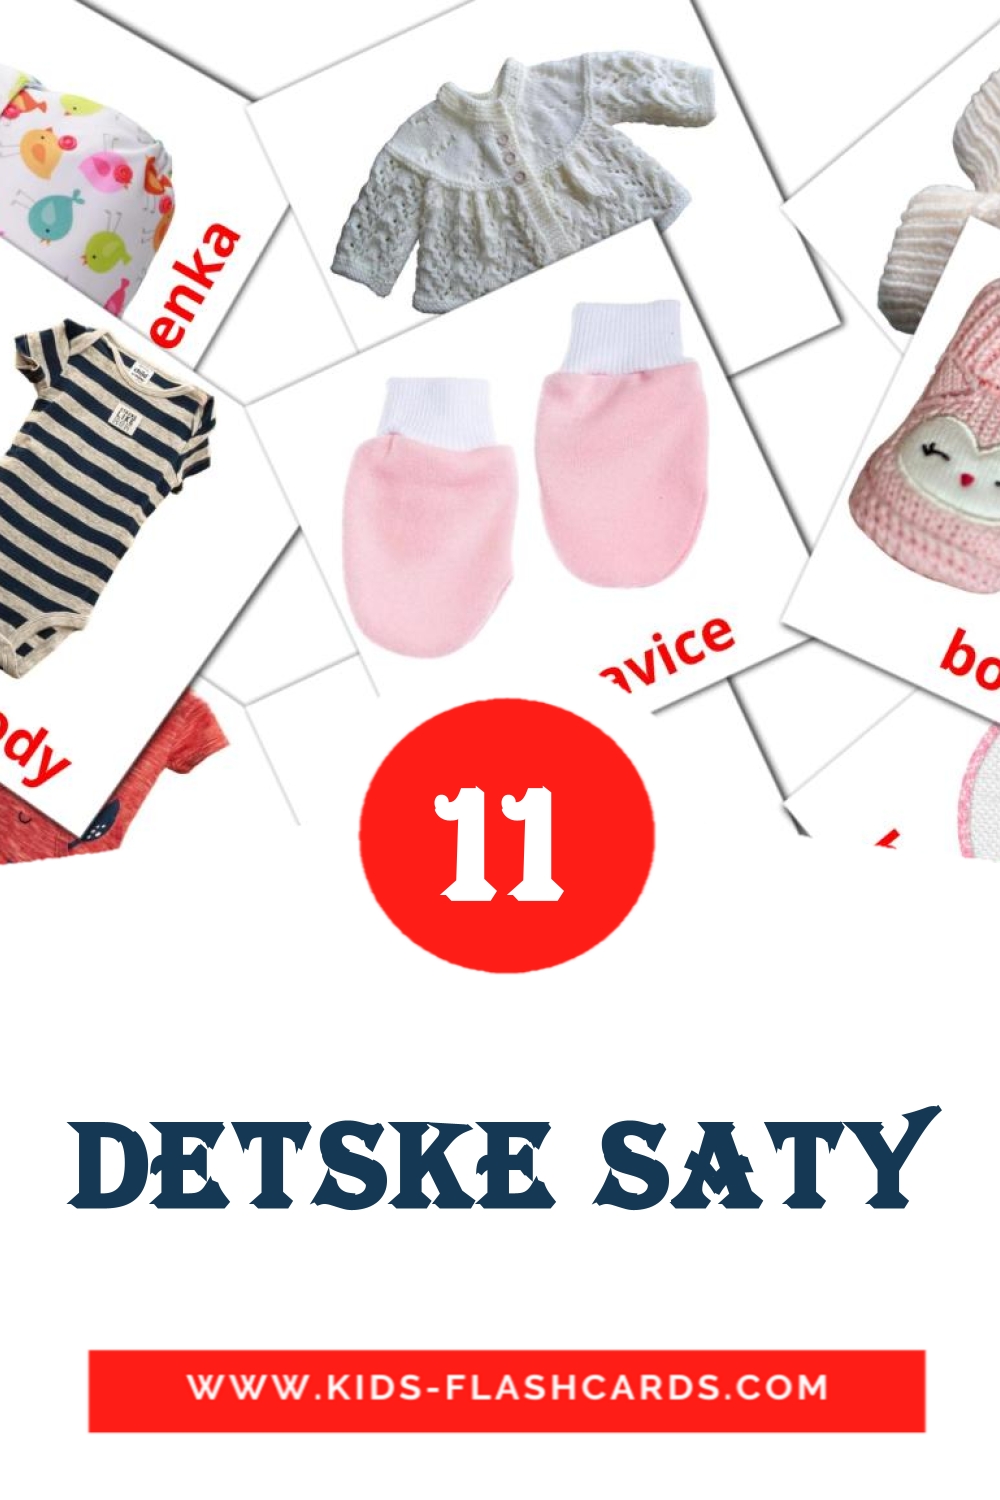 Detske saty на словацком для Детского Сада (12 карточек)